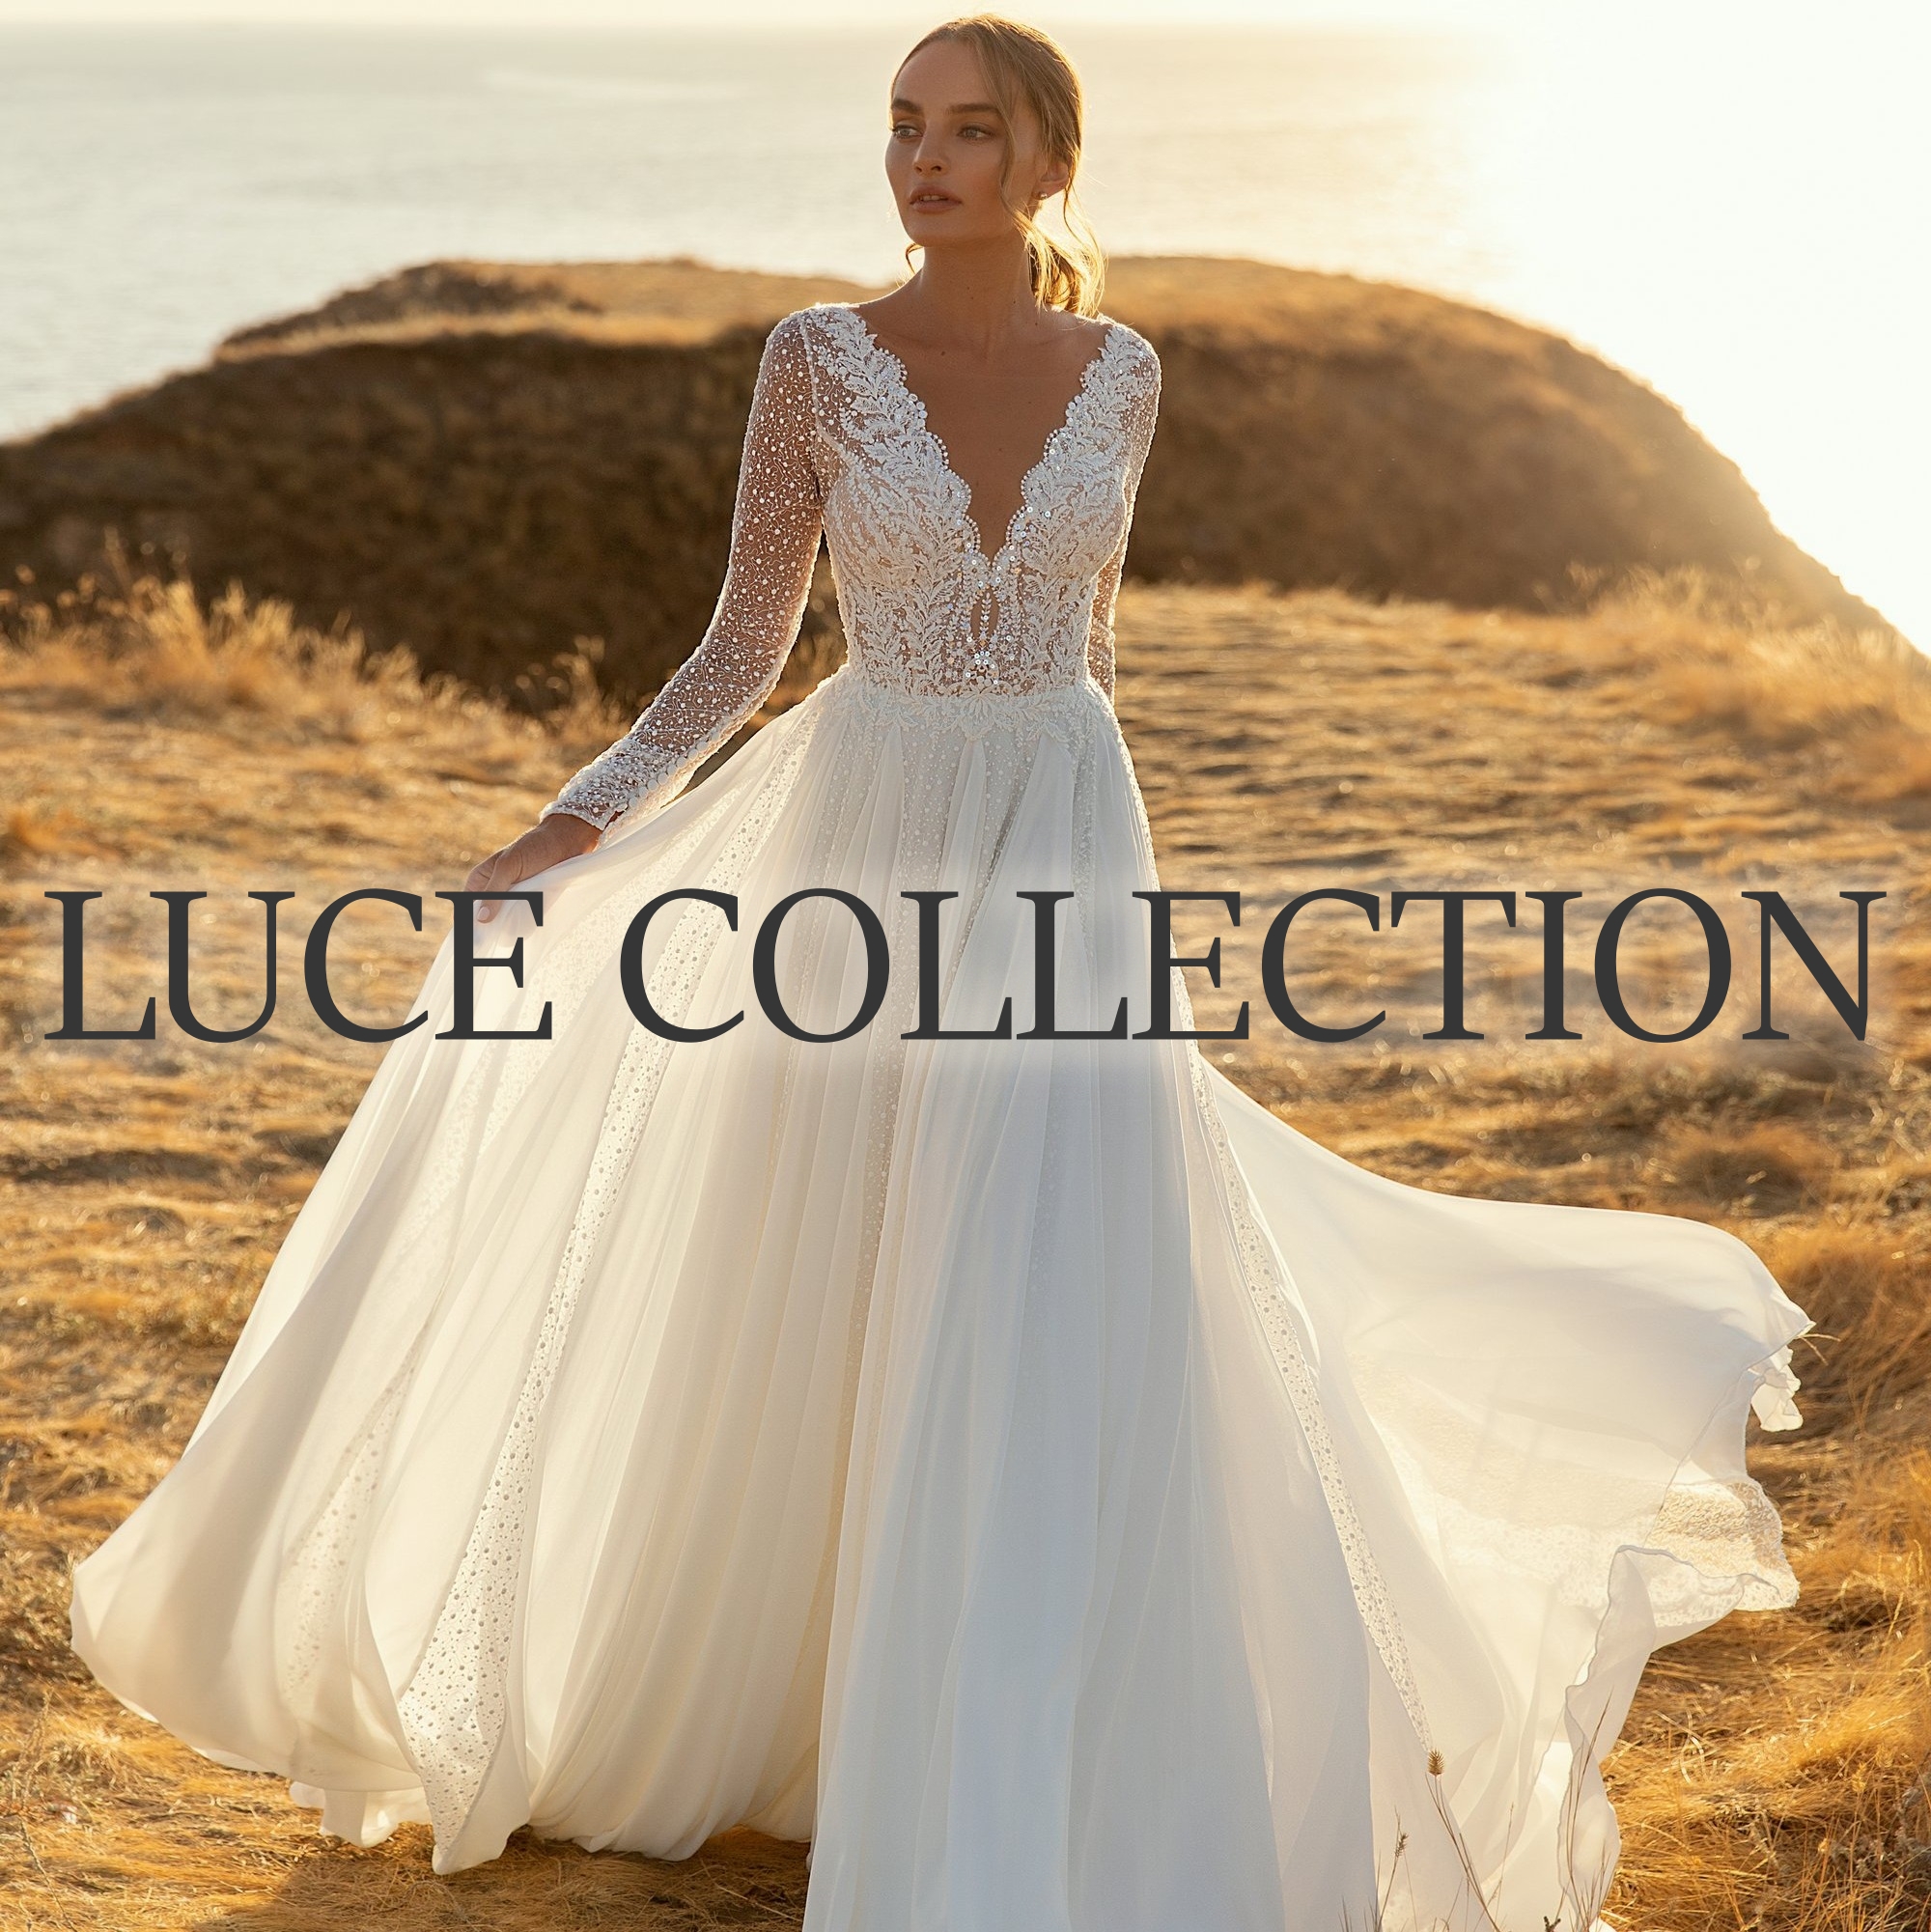 Luce Sposa esküvői ruha kollekció